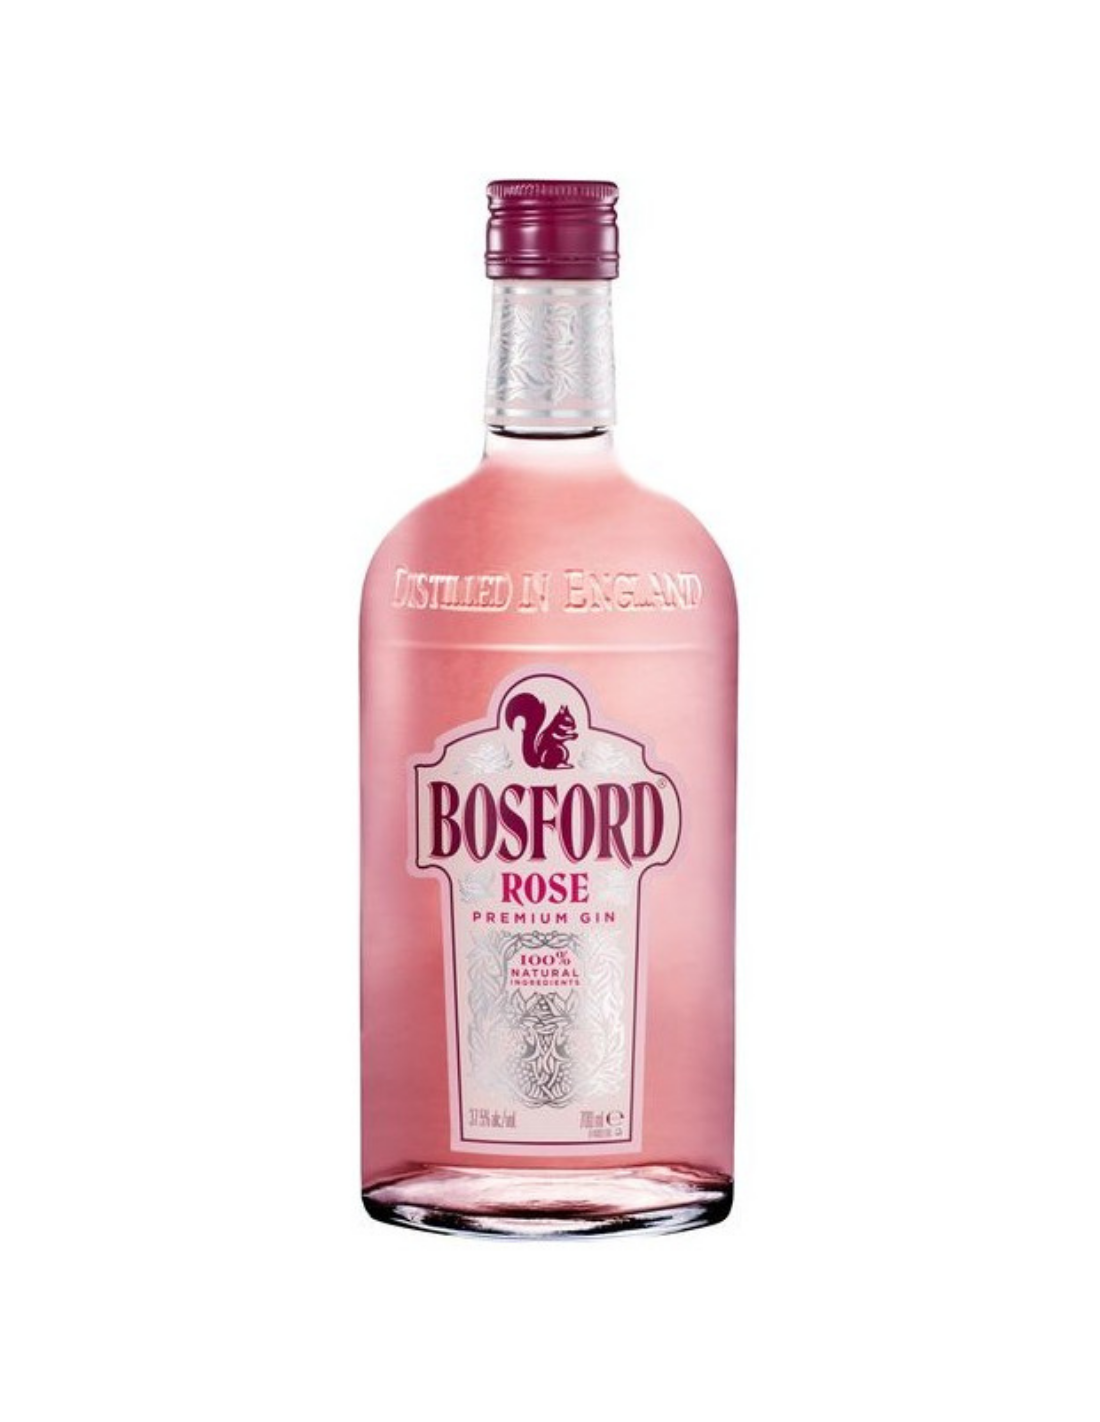 Gin Bosford Premium Rose, 37.5% alc., 0.7L, Anglia alcooldiscount.ro